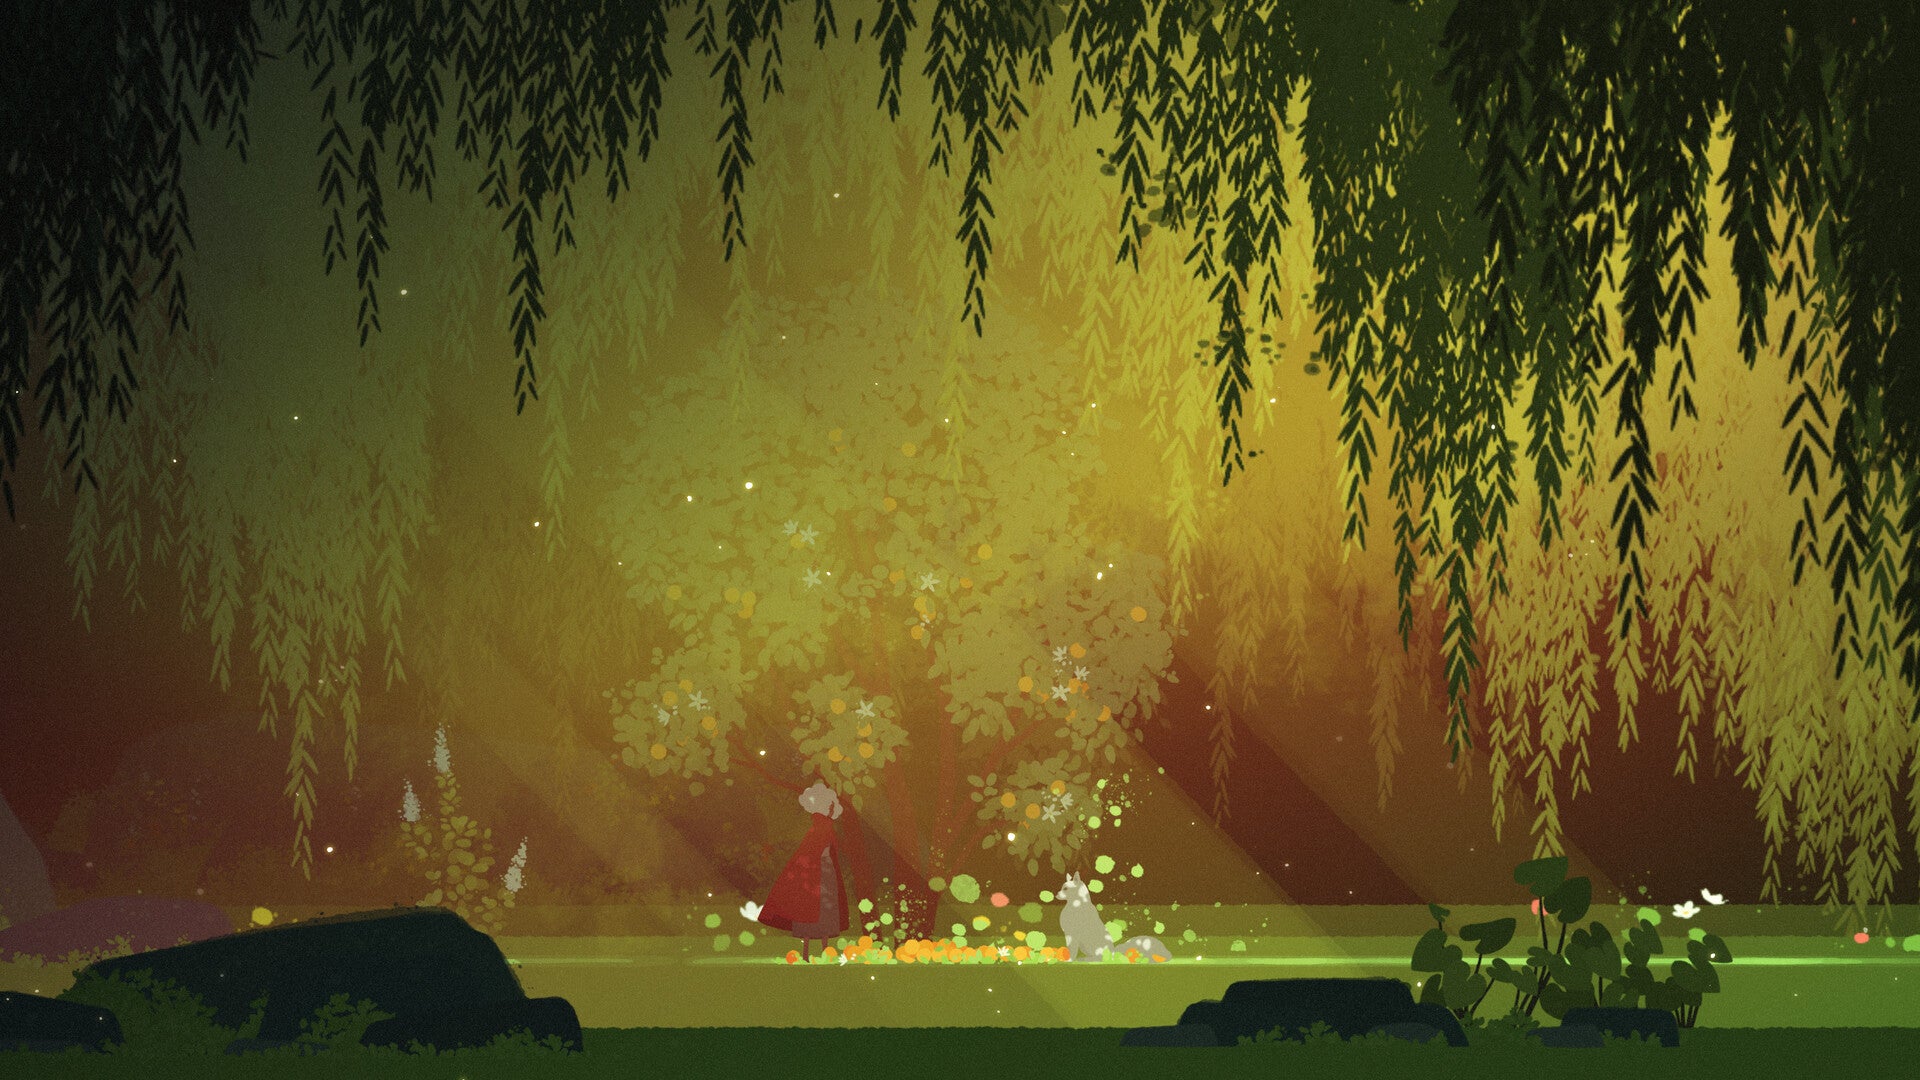 Un plan de côté d'un petit personnage en cape et d'un loup se faisant face dans un espace dégagé d'une forêt. Le style est très illustratif, avec des éclats de lumière du soleil traversant l'image.